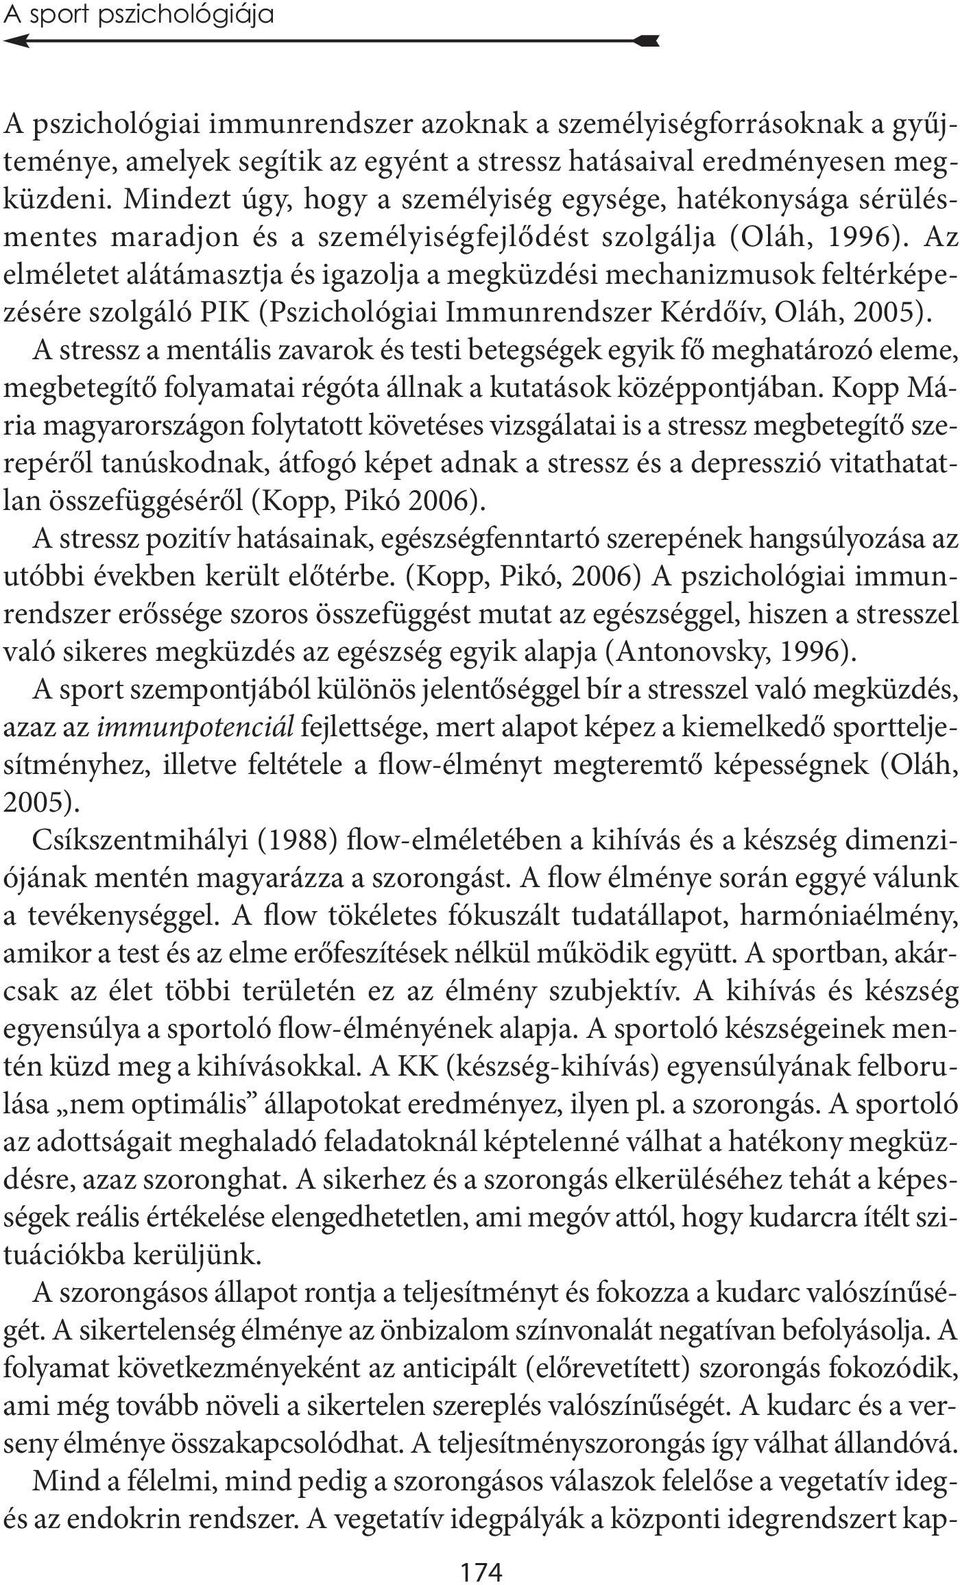 Az elméletet alátámasztja és igazolja a megküzdési mechanizmusok feltérképezésére szolgáló PIK (Pszichológiai Immunrendszer Kérdőív, Oláh, 2005).